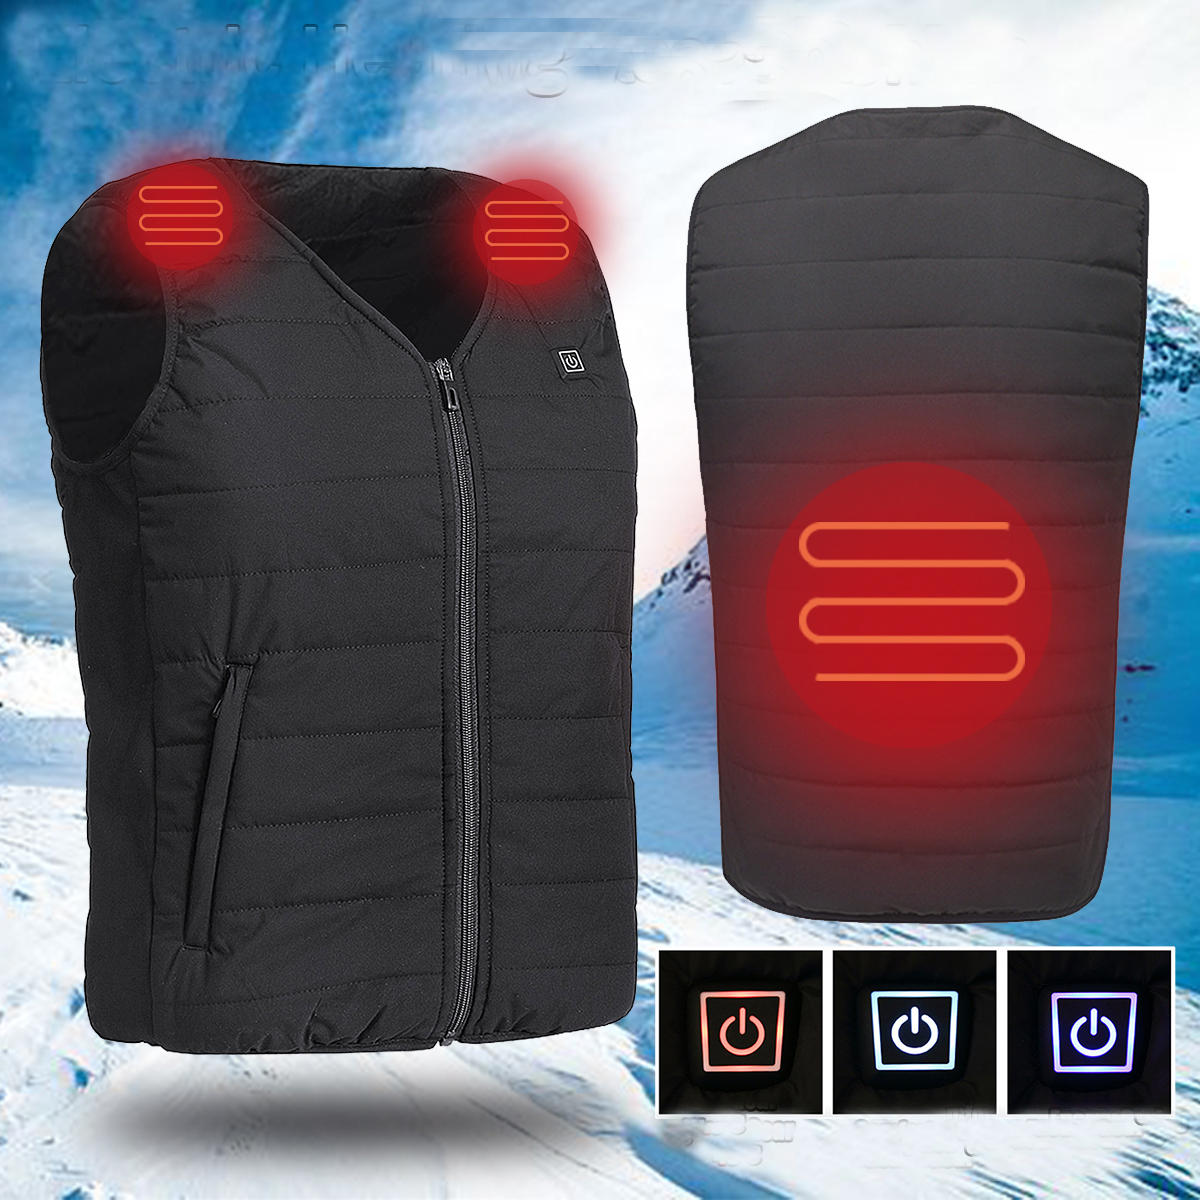 Männer USB Elektrische Heizung Weste Jacke Outdoor Sports Wasserdichte Winter Warme Kleidung Erhitzt Gepolsterter Mantel